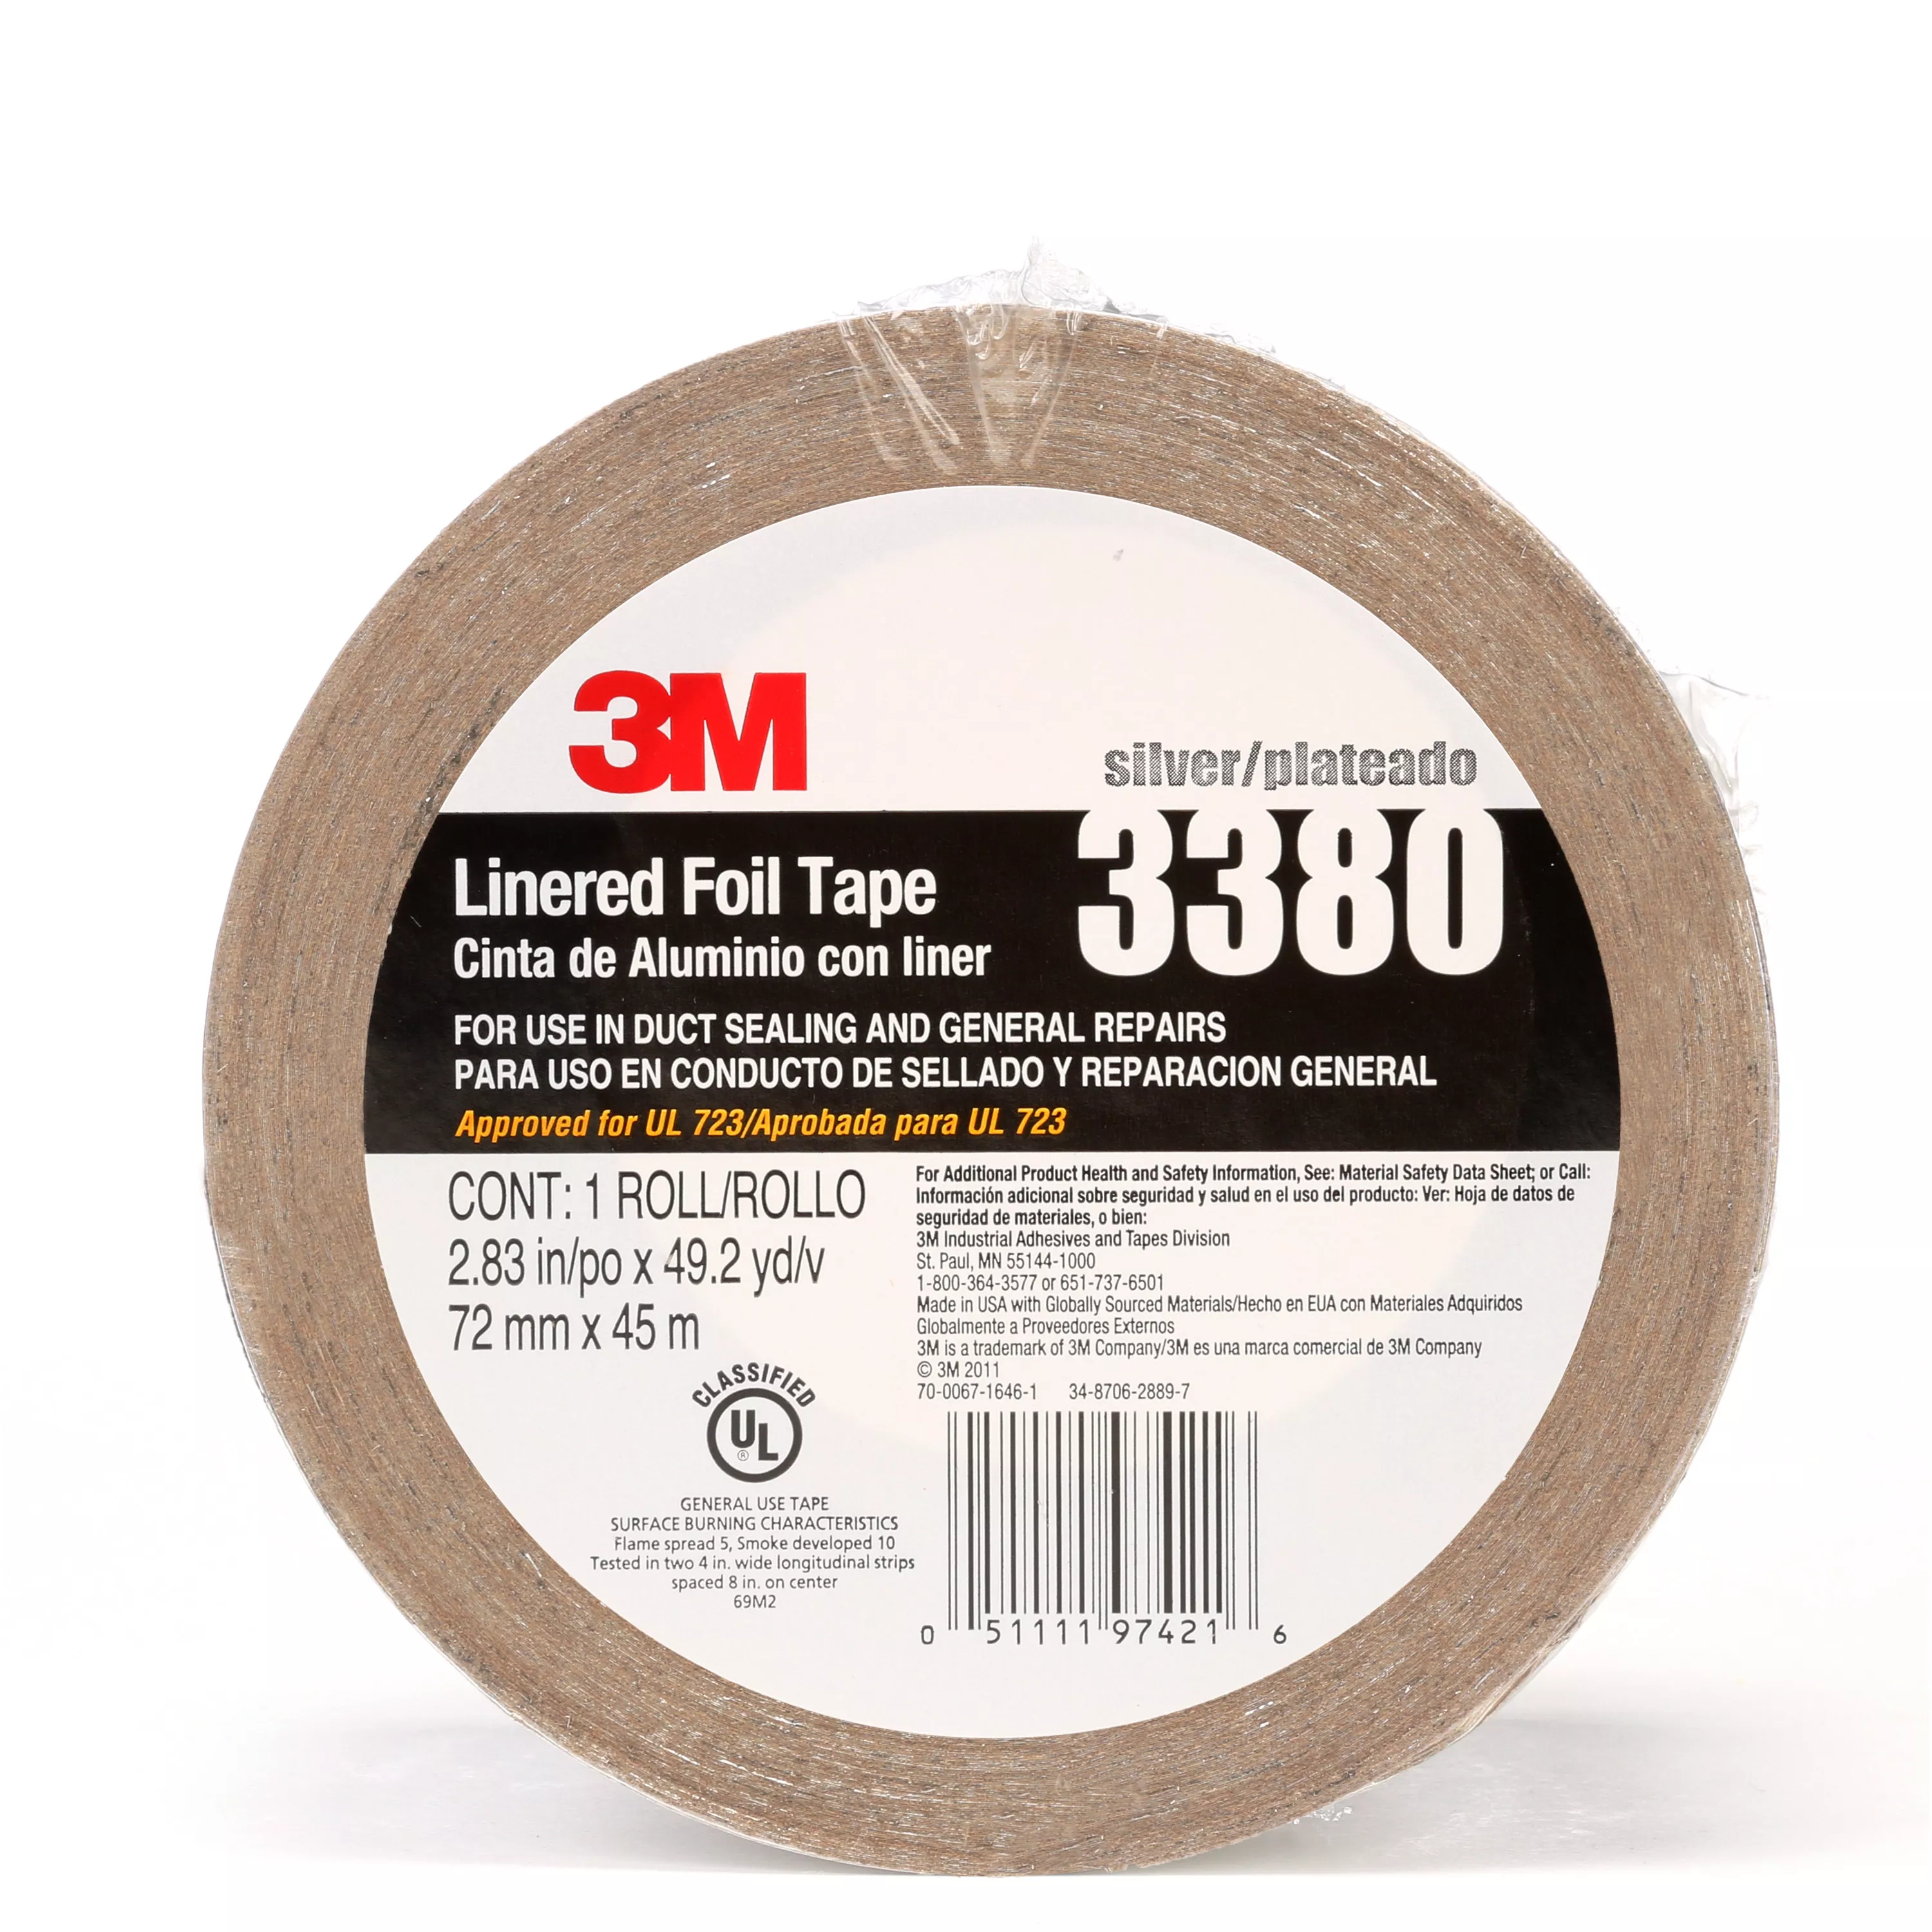 3M™ Aluminum Foil Tape 3380, Silver, 72 mm x 45 m, 3.25 mil, 16
Rolls/Case